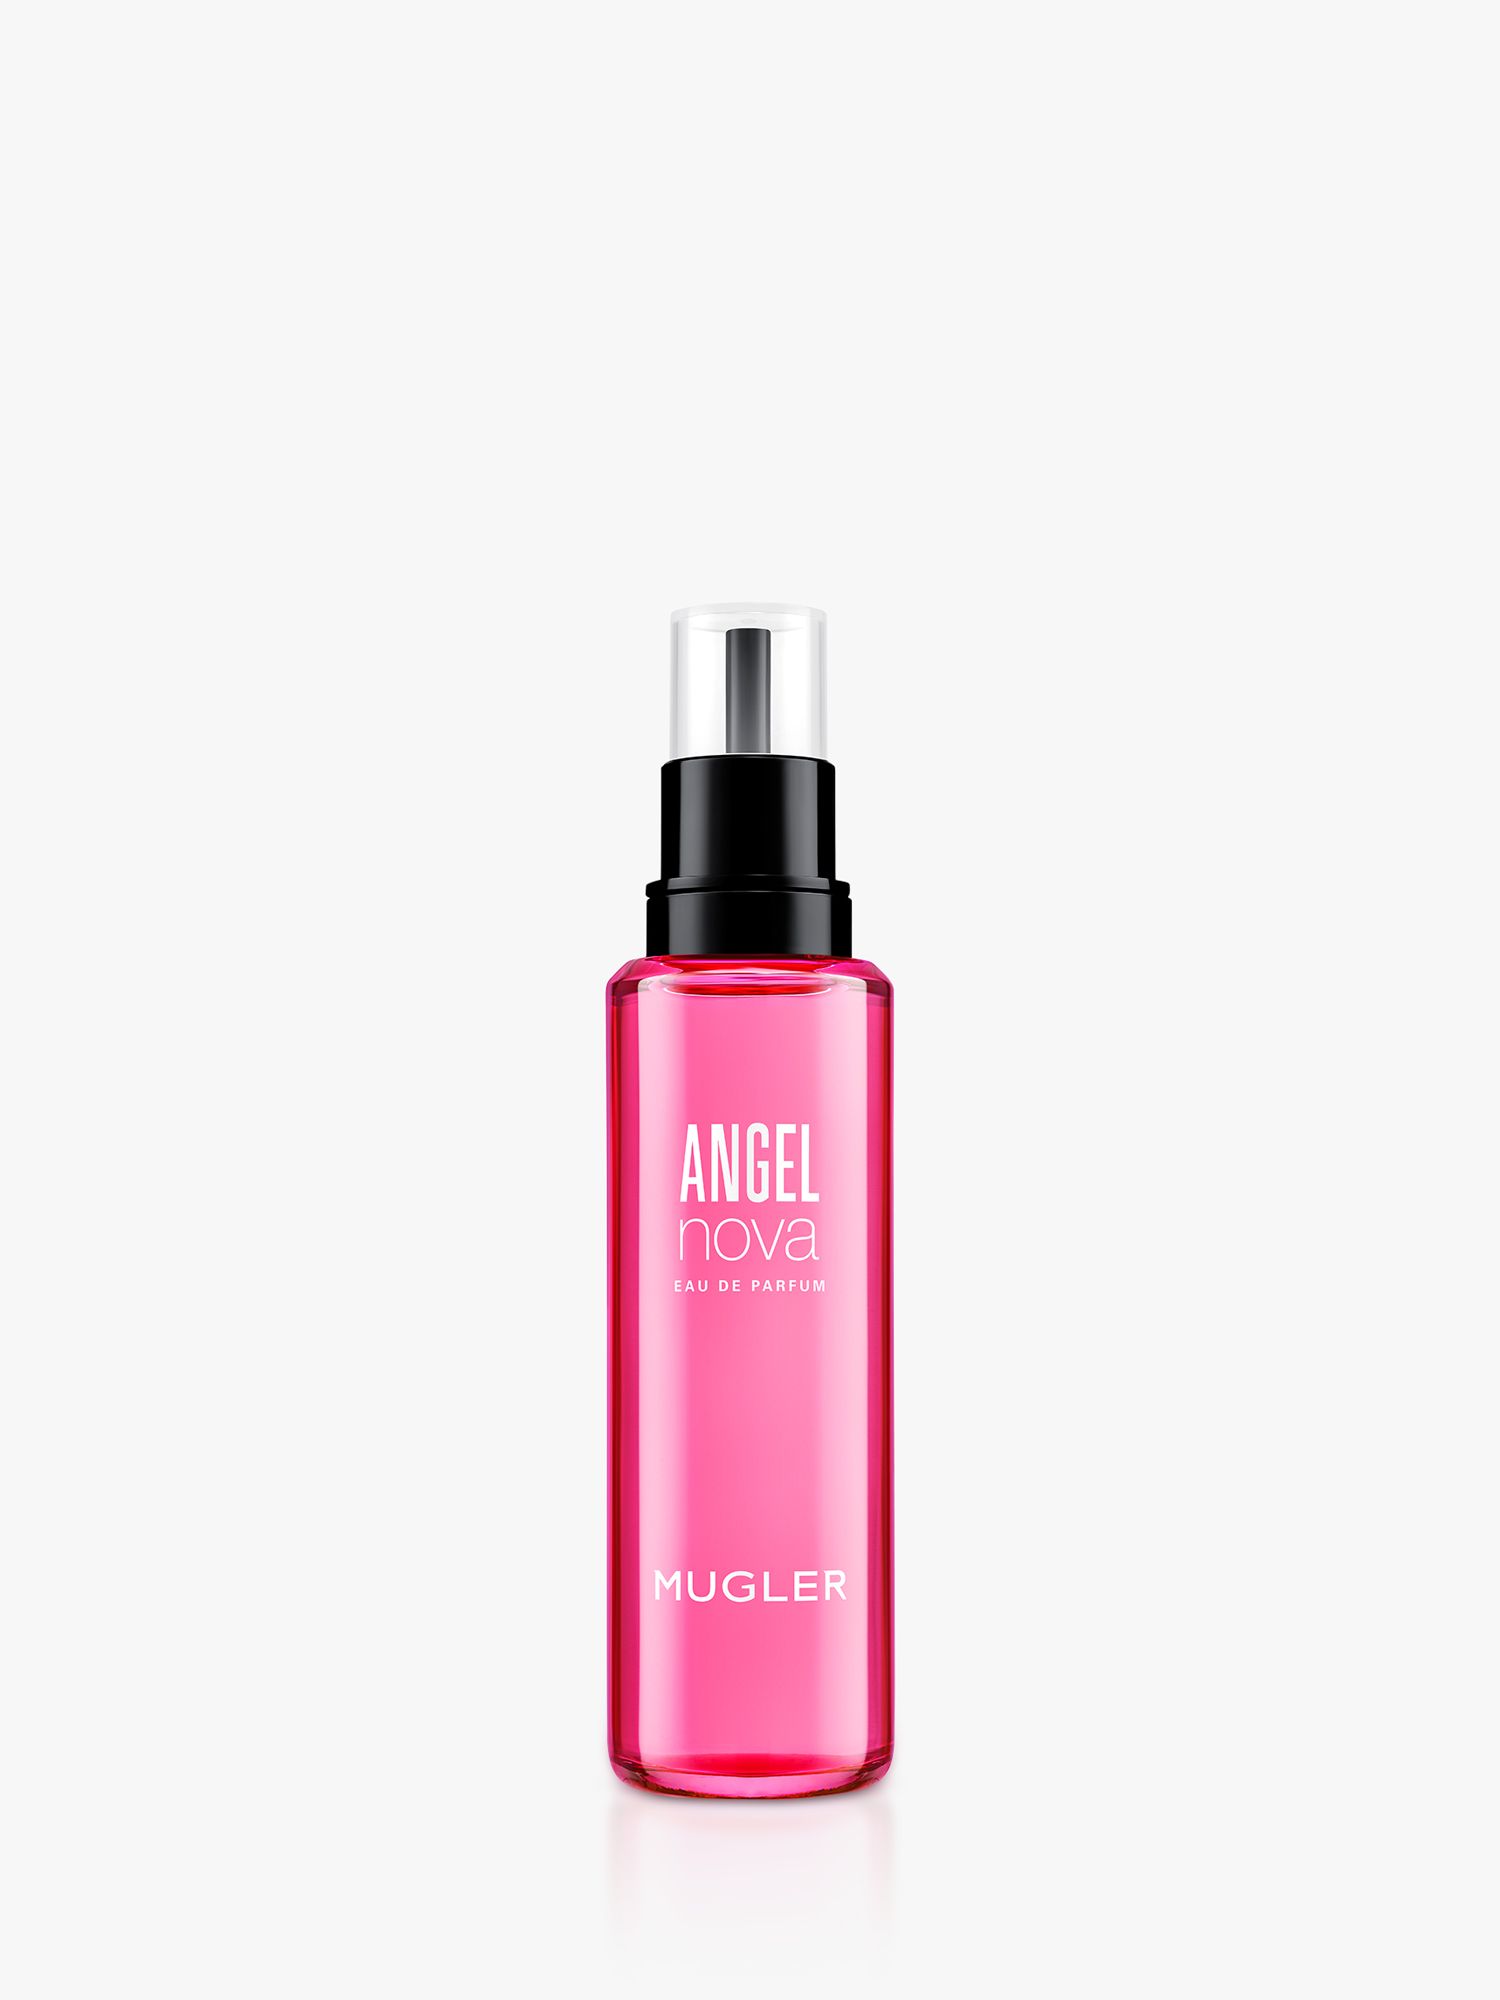 Mugler Angel Nova Eau de Parfum Refill, 100ml 1